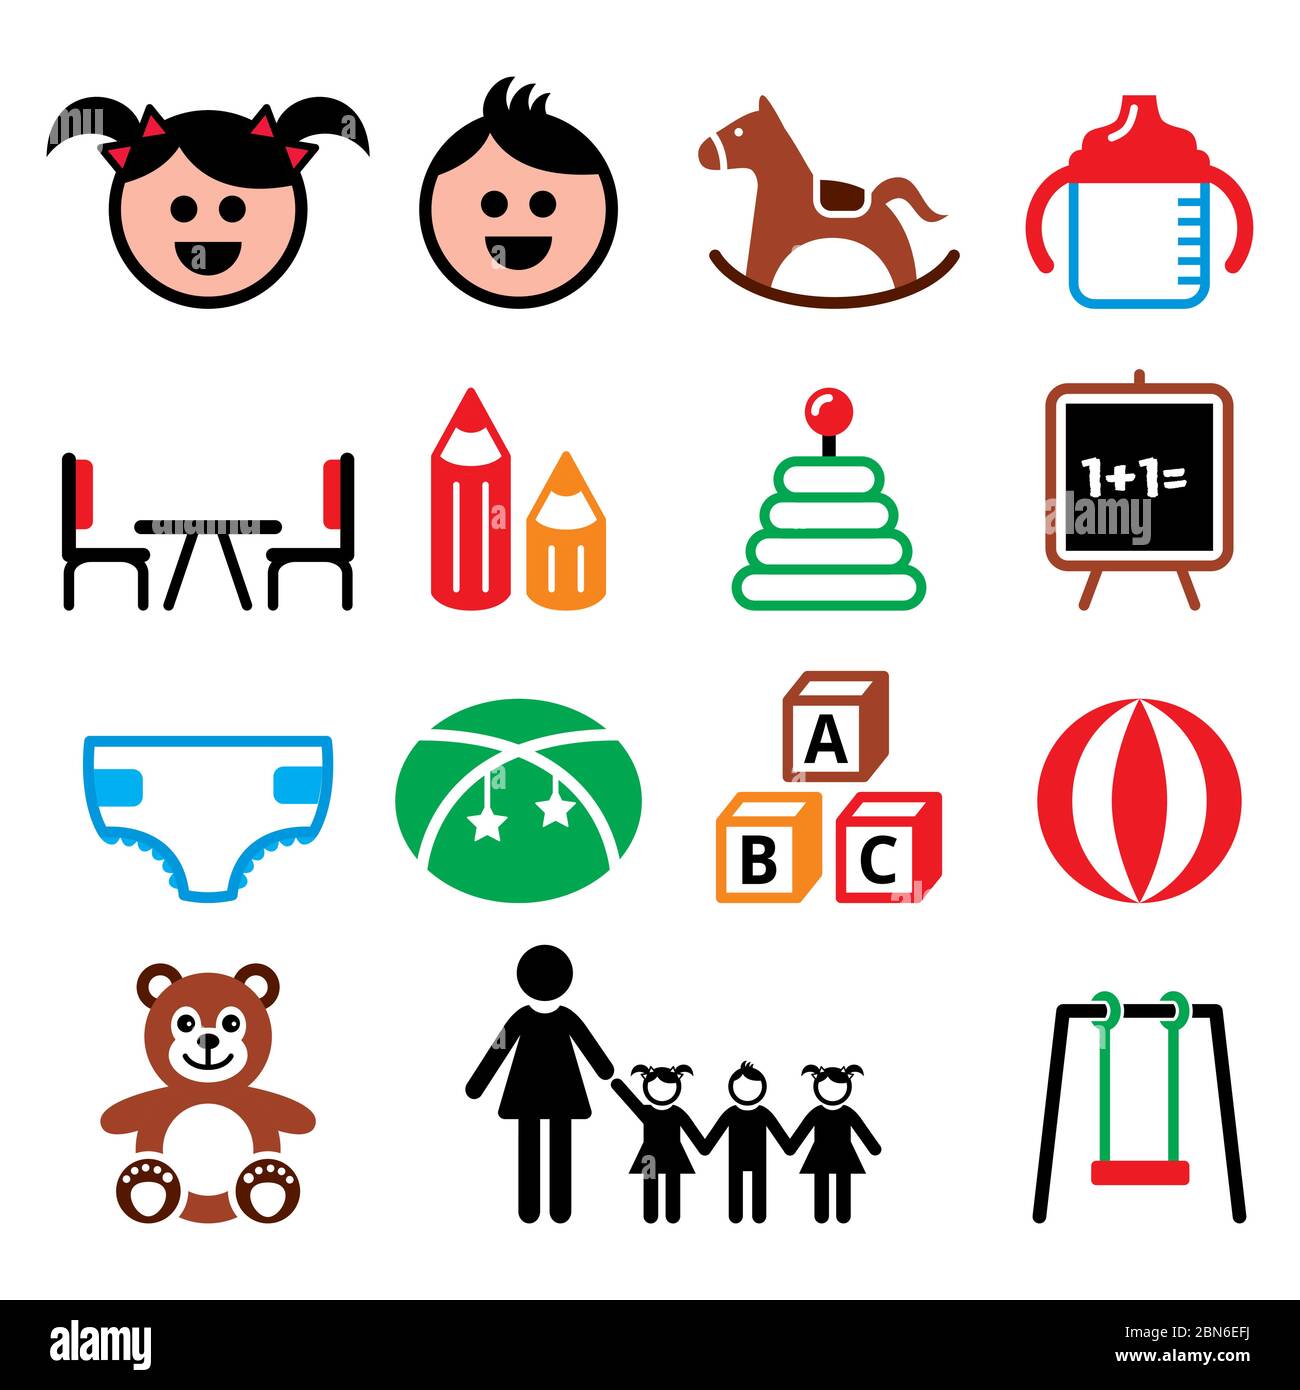 Les icônes de couleur des enfants de maternelle, maternelle et maternelle définissent les bébés et les enfants dans la crèche ou les icônes vectorielles de la maternelle sur blanc Illustration de Vecteur